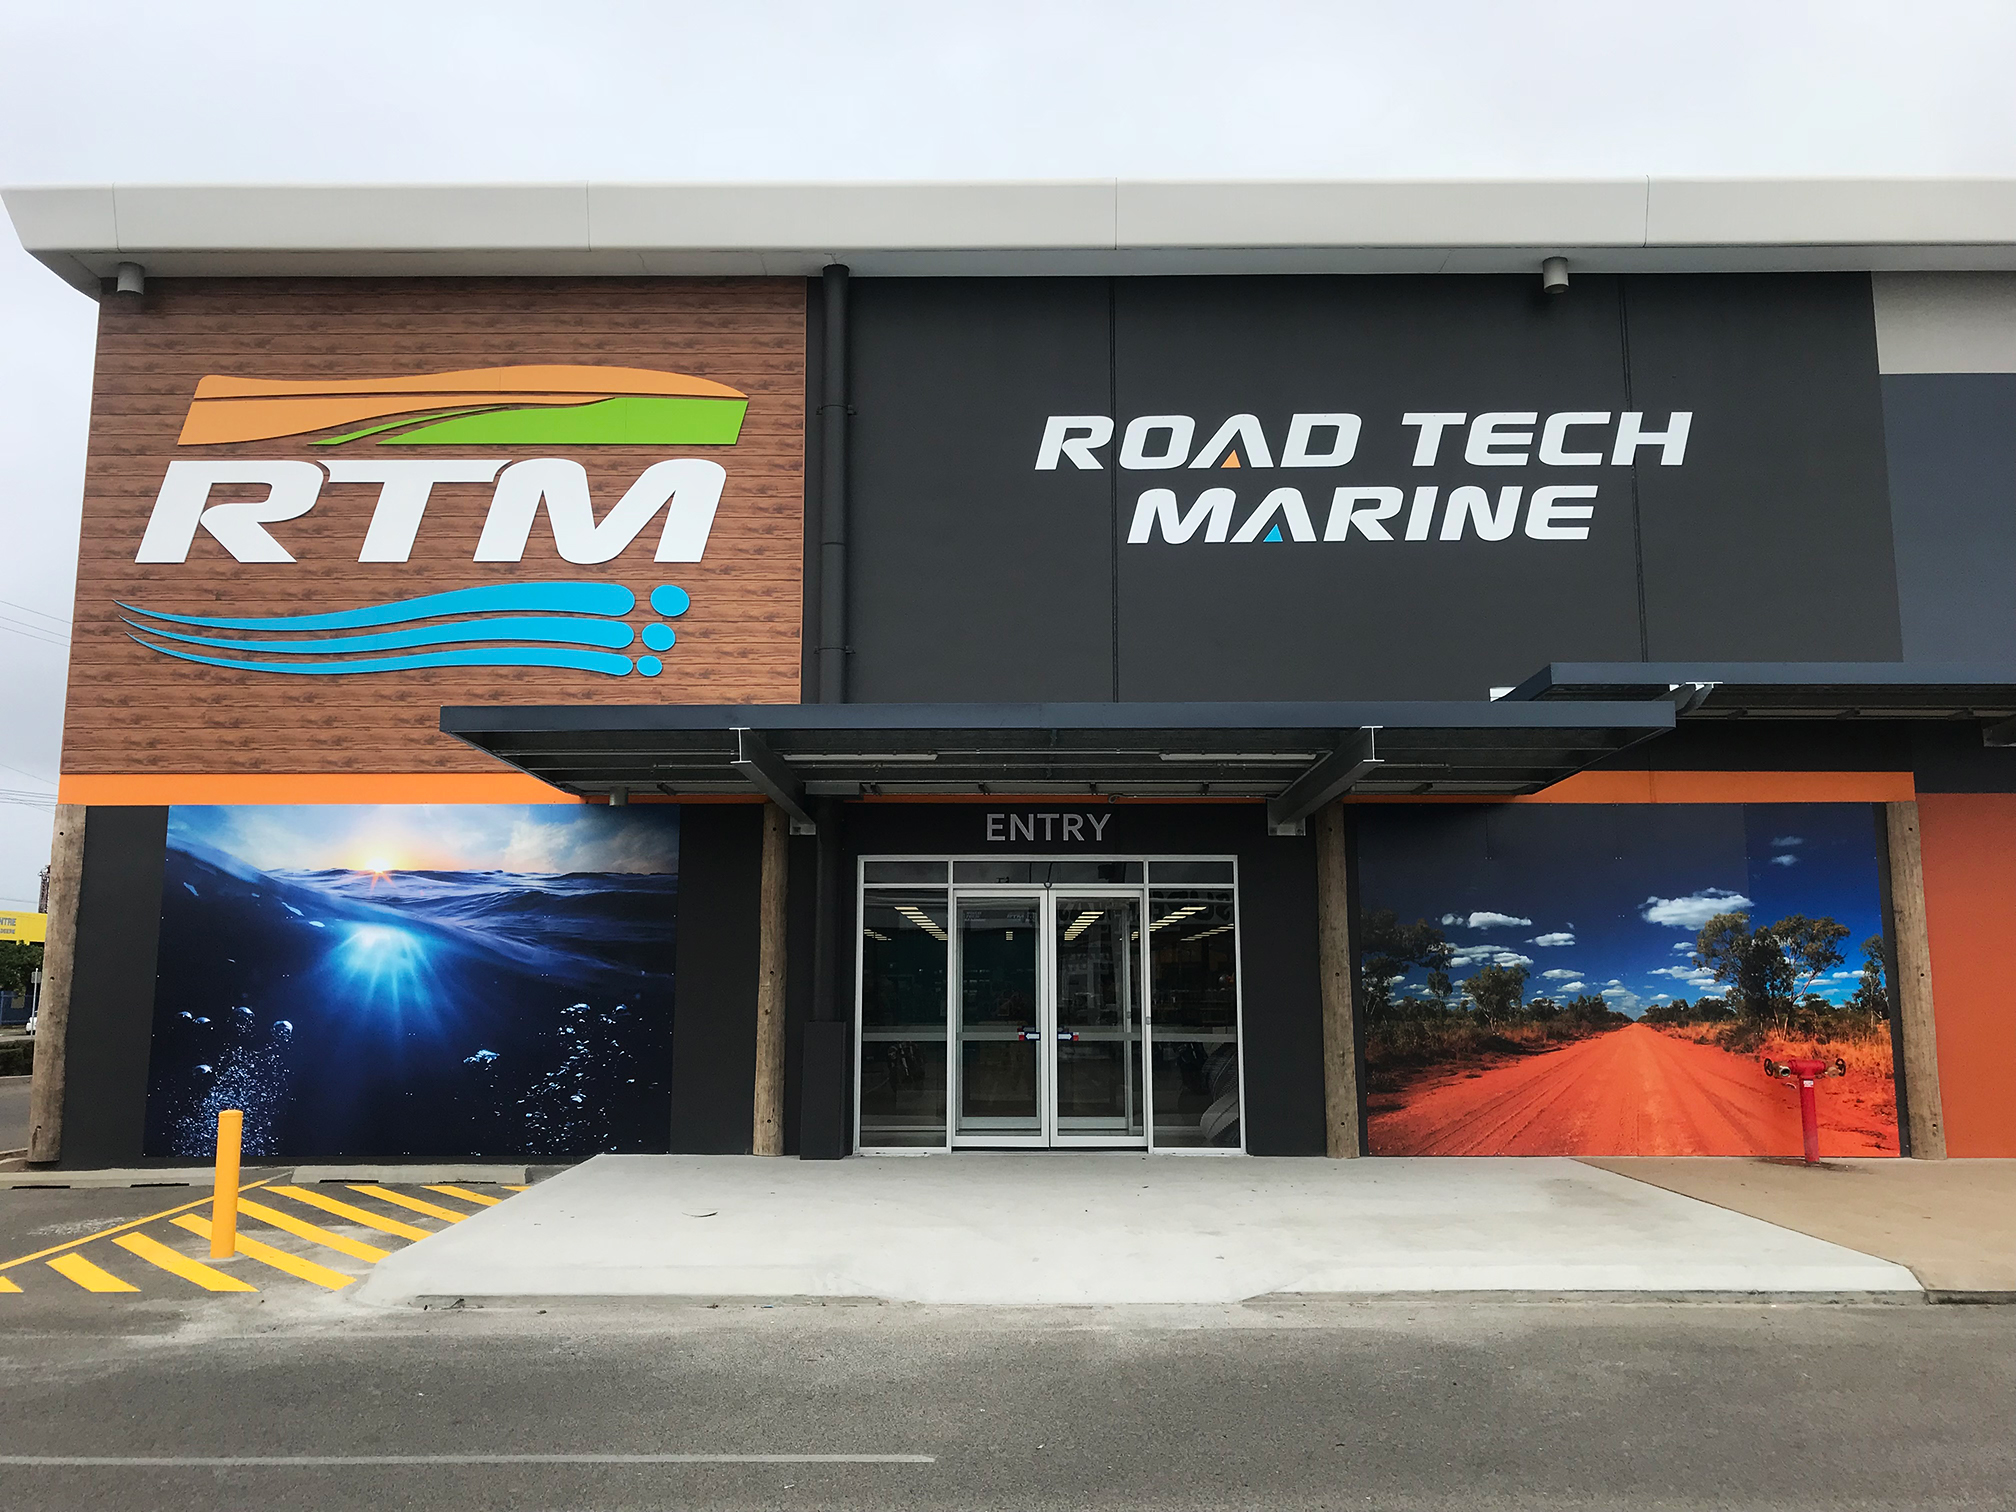 RTM - Road Tech Marine Townsville Garbutt (07) 4728 4422